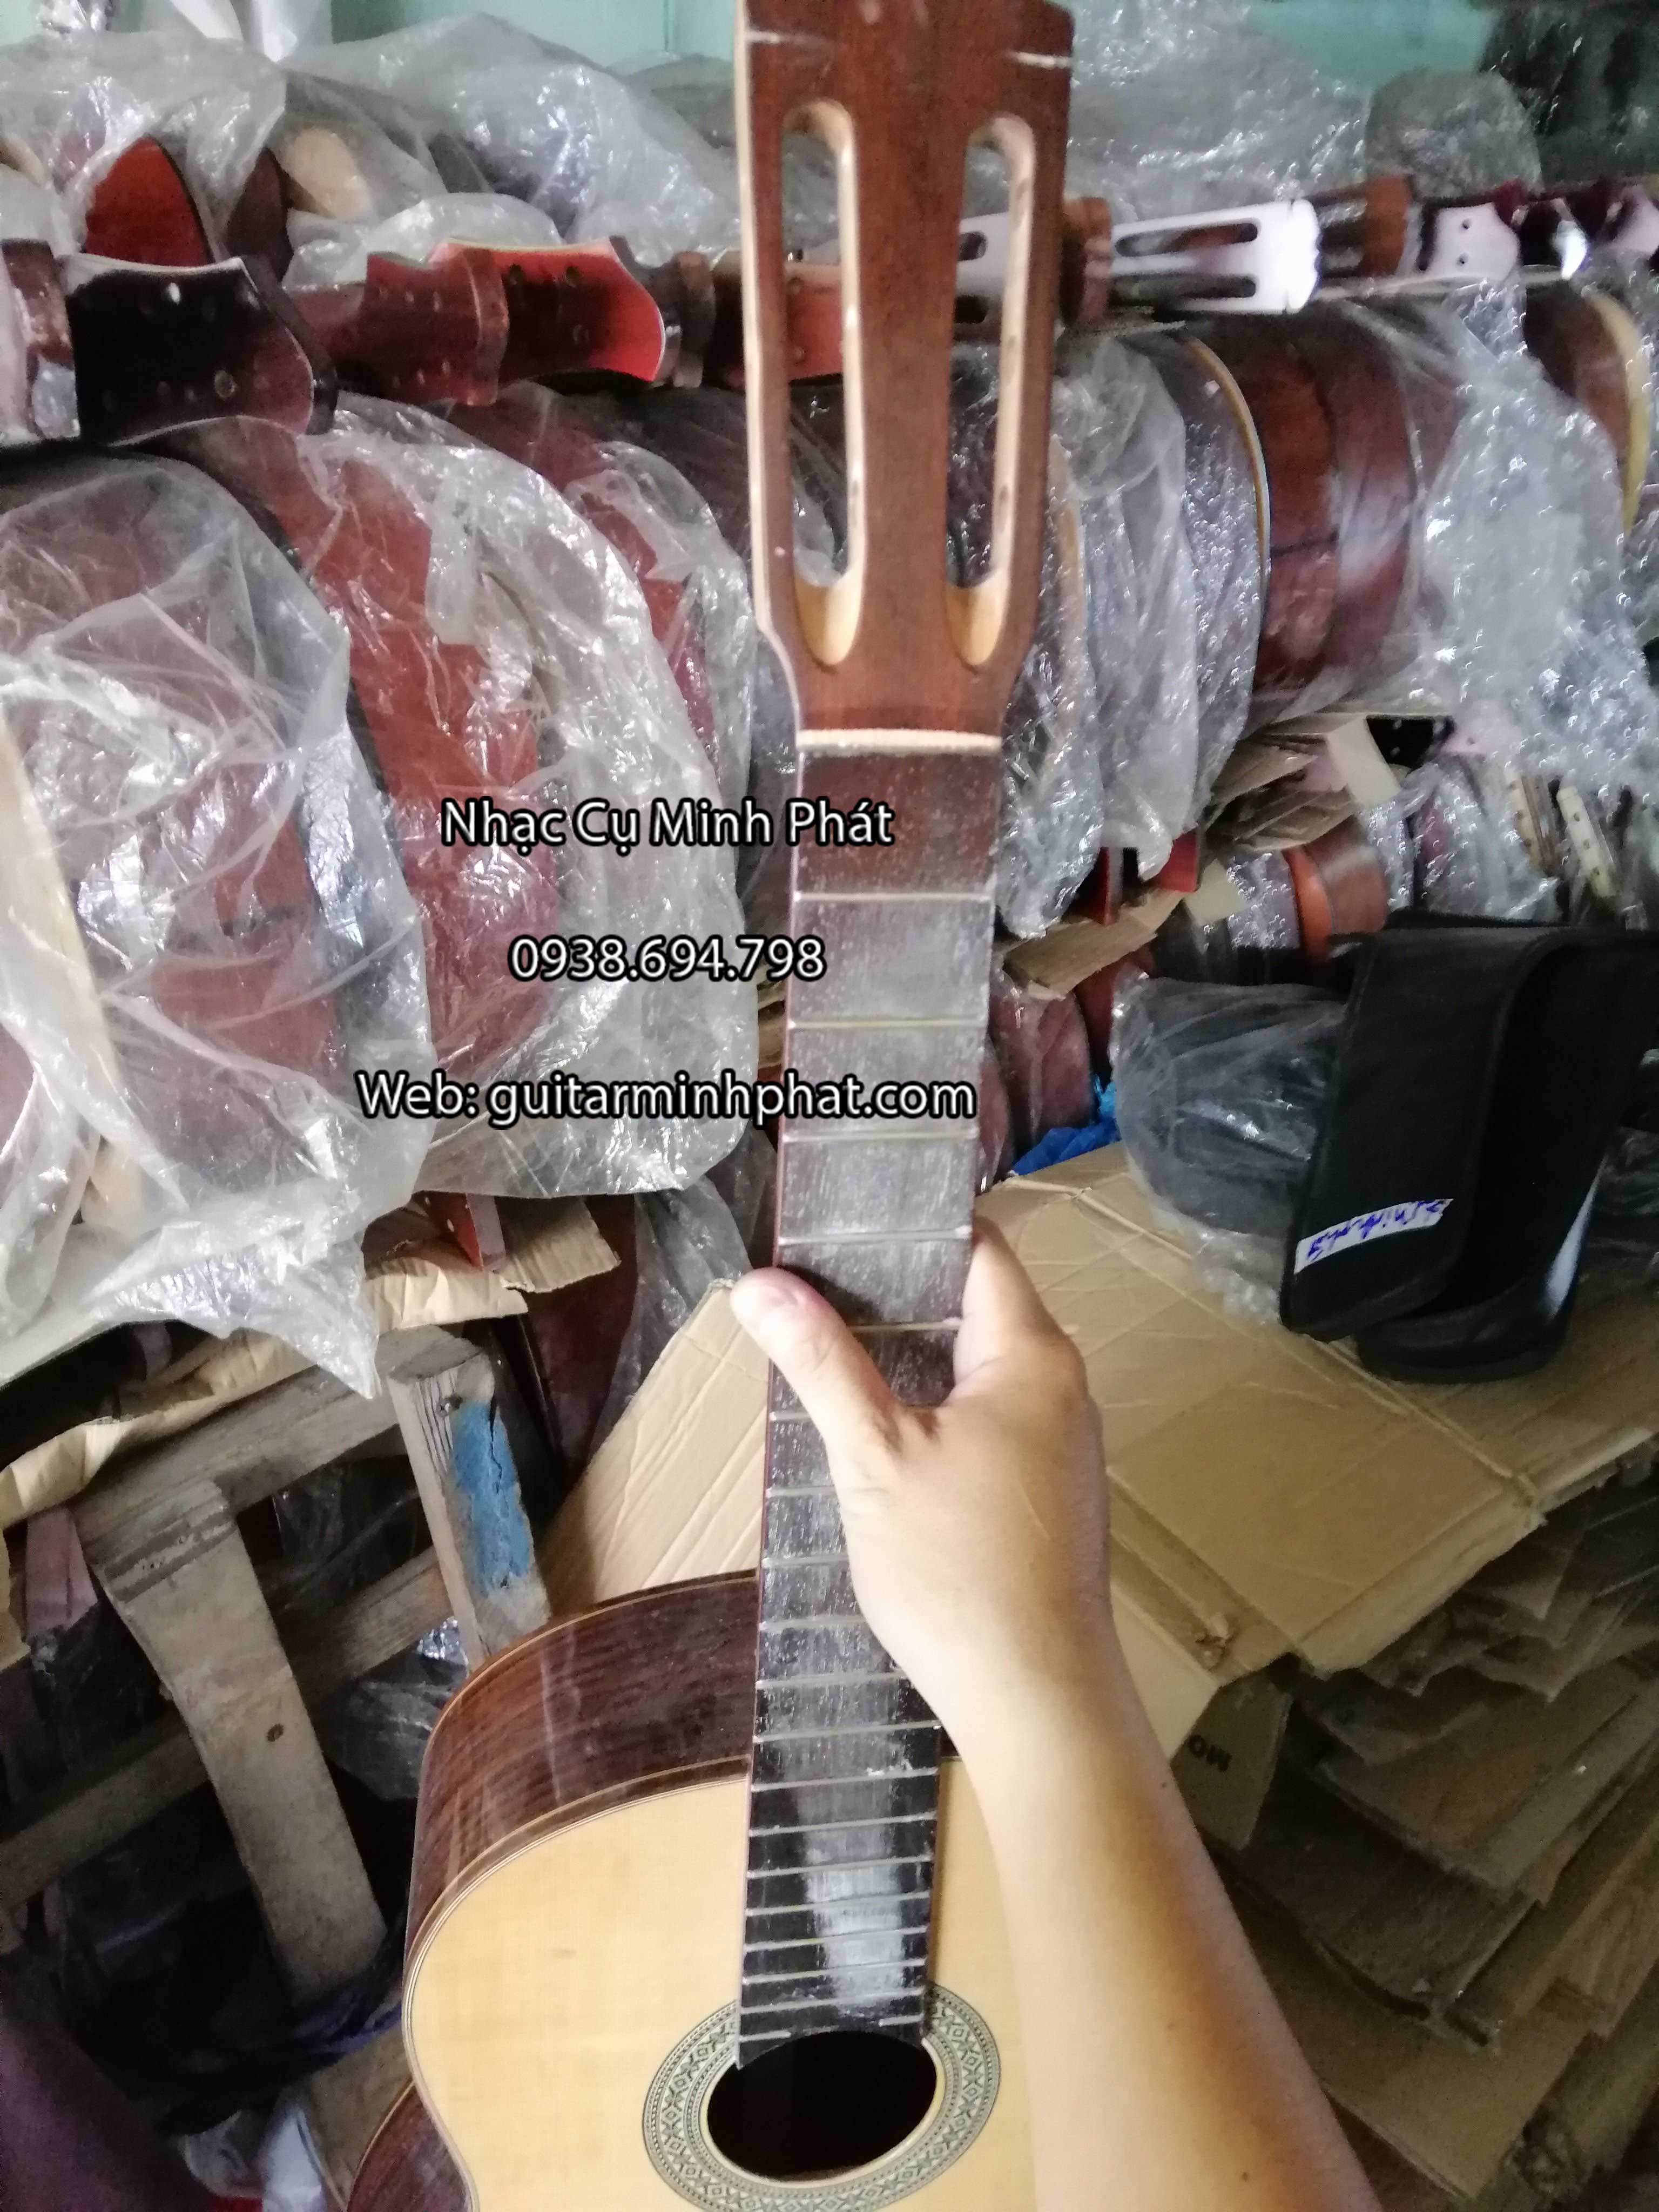 Xưởng đàn guitar Minh Phát